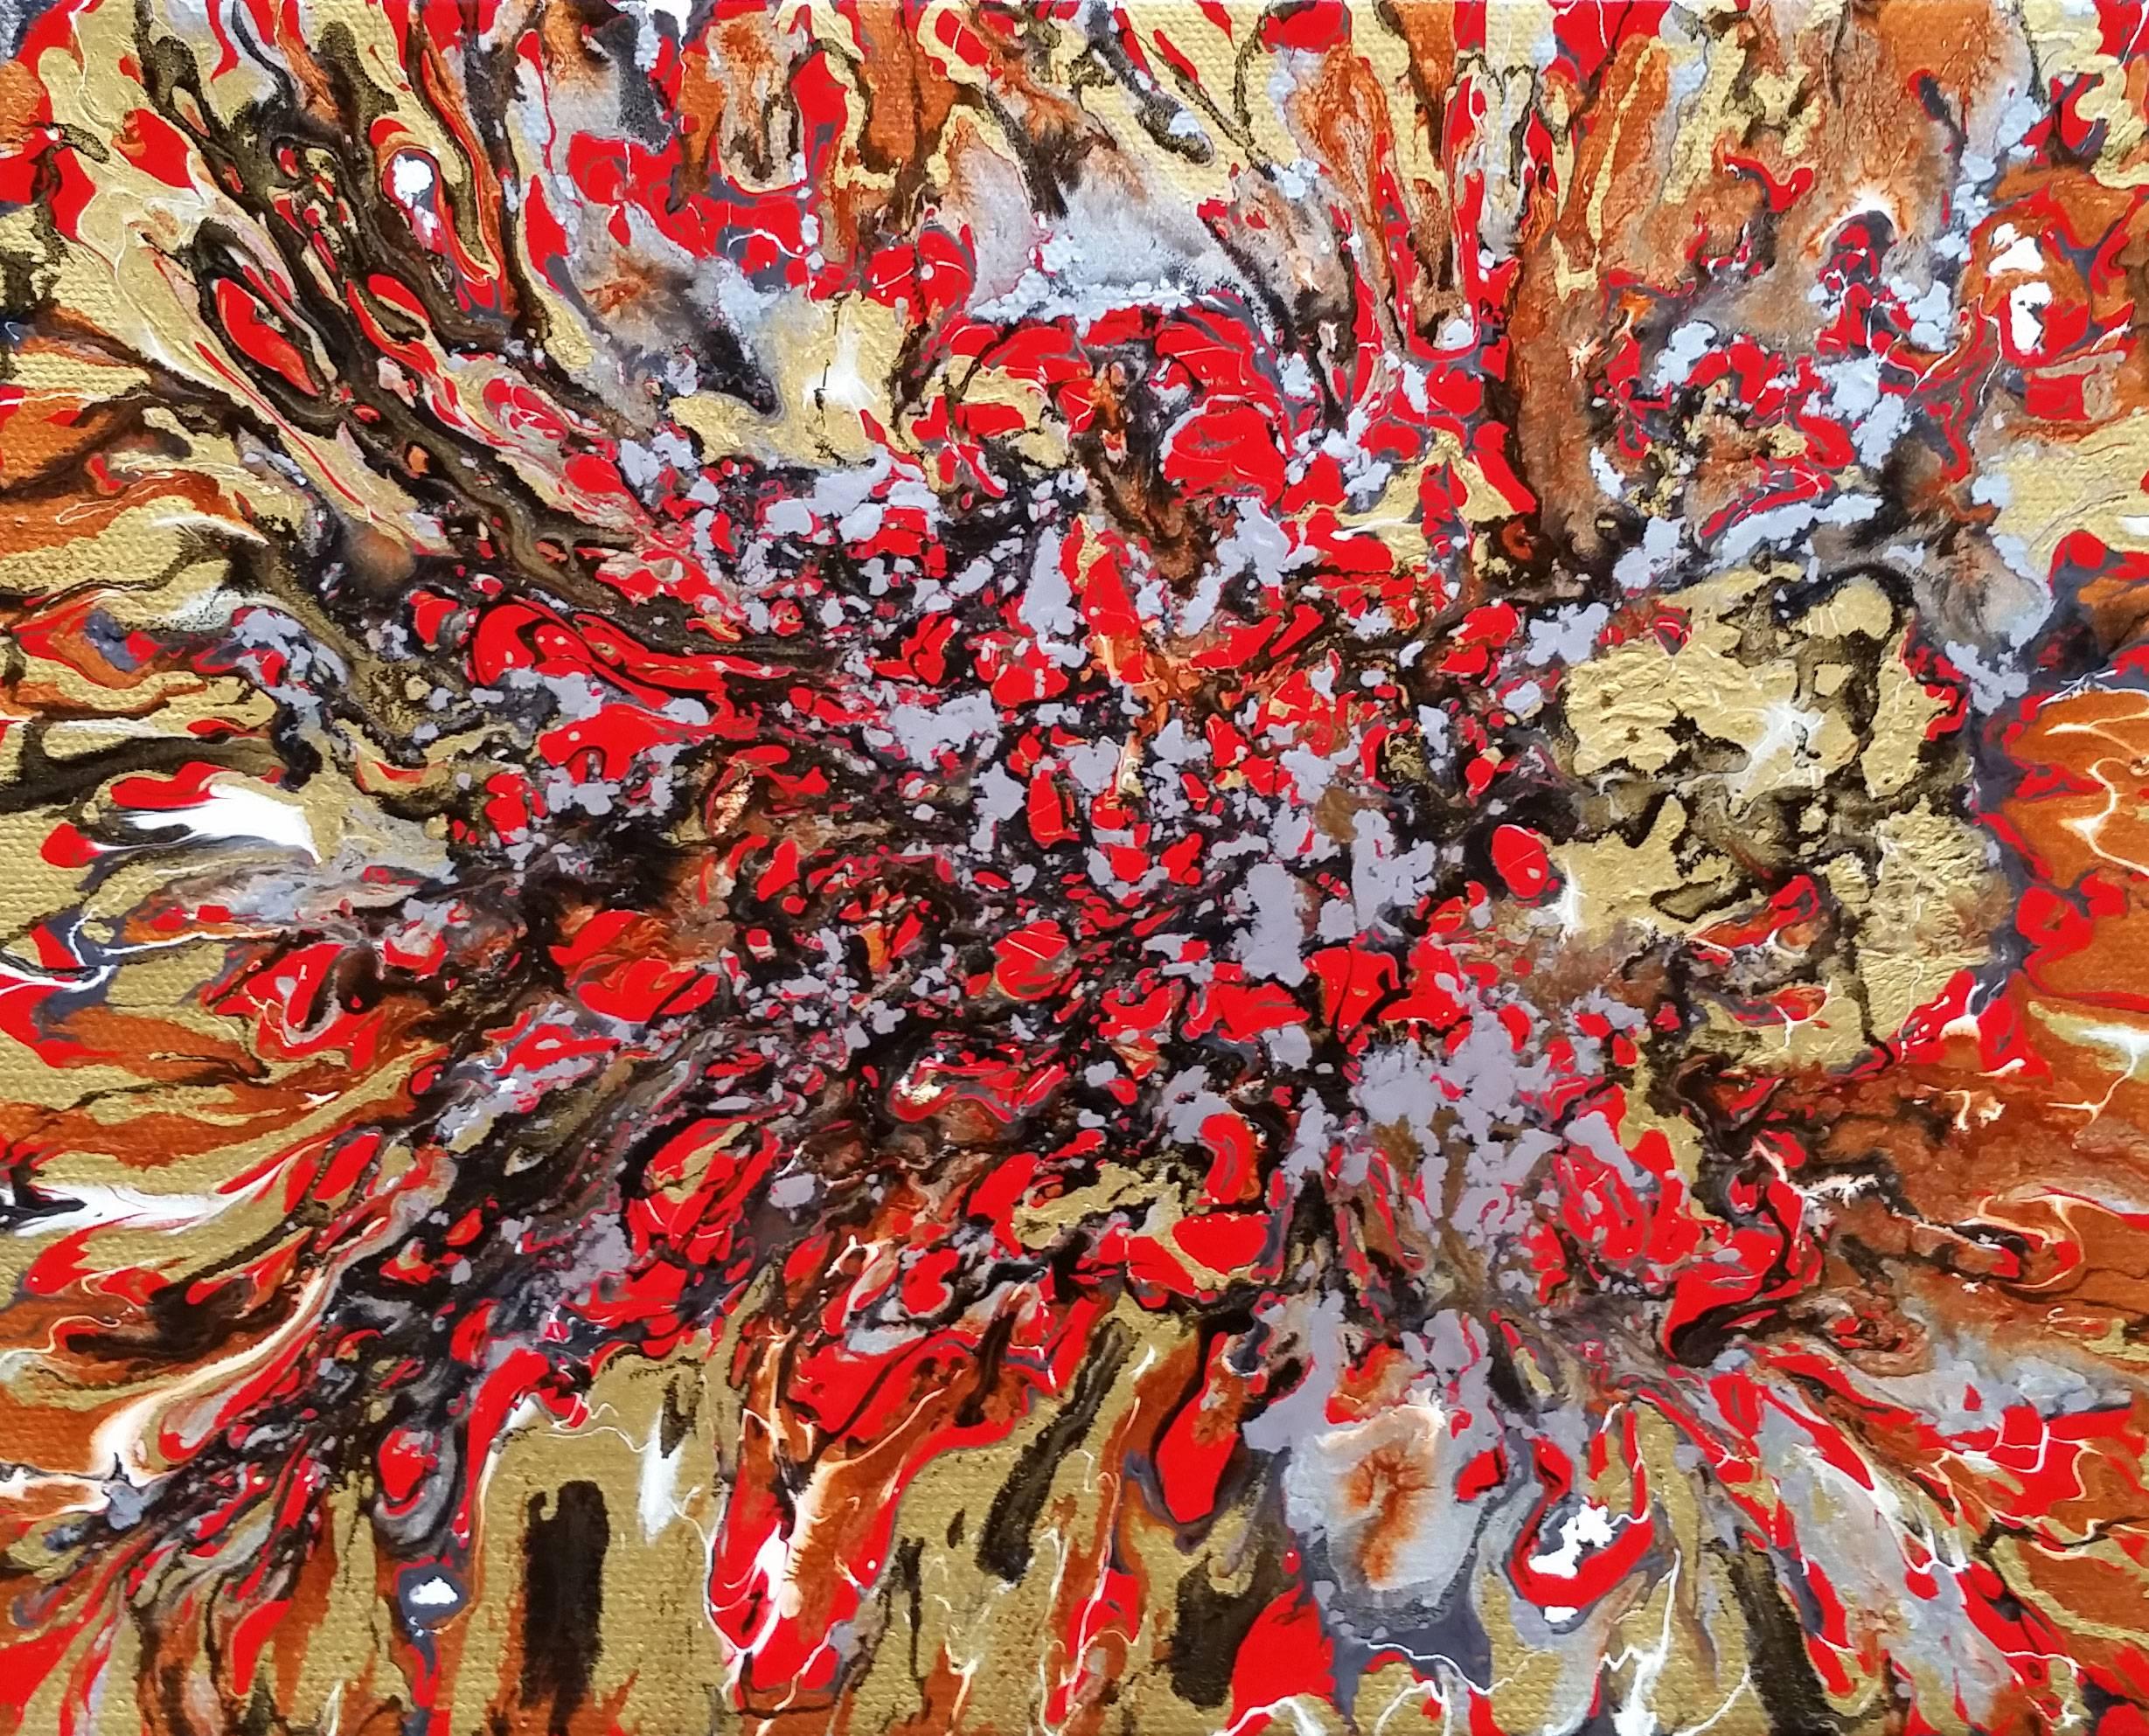 Red River - Abstract Mixed Media Art by Alexandra Romano